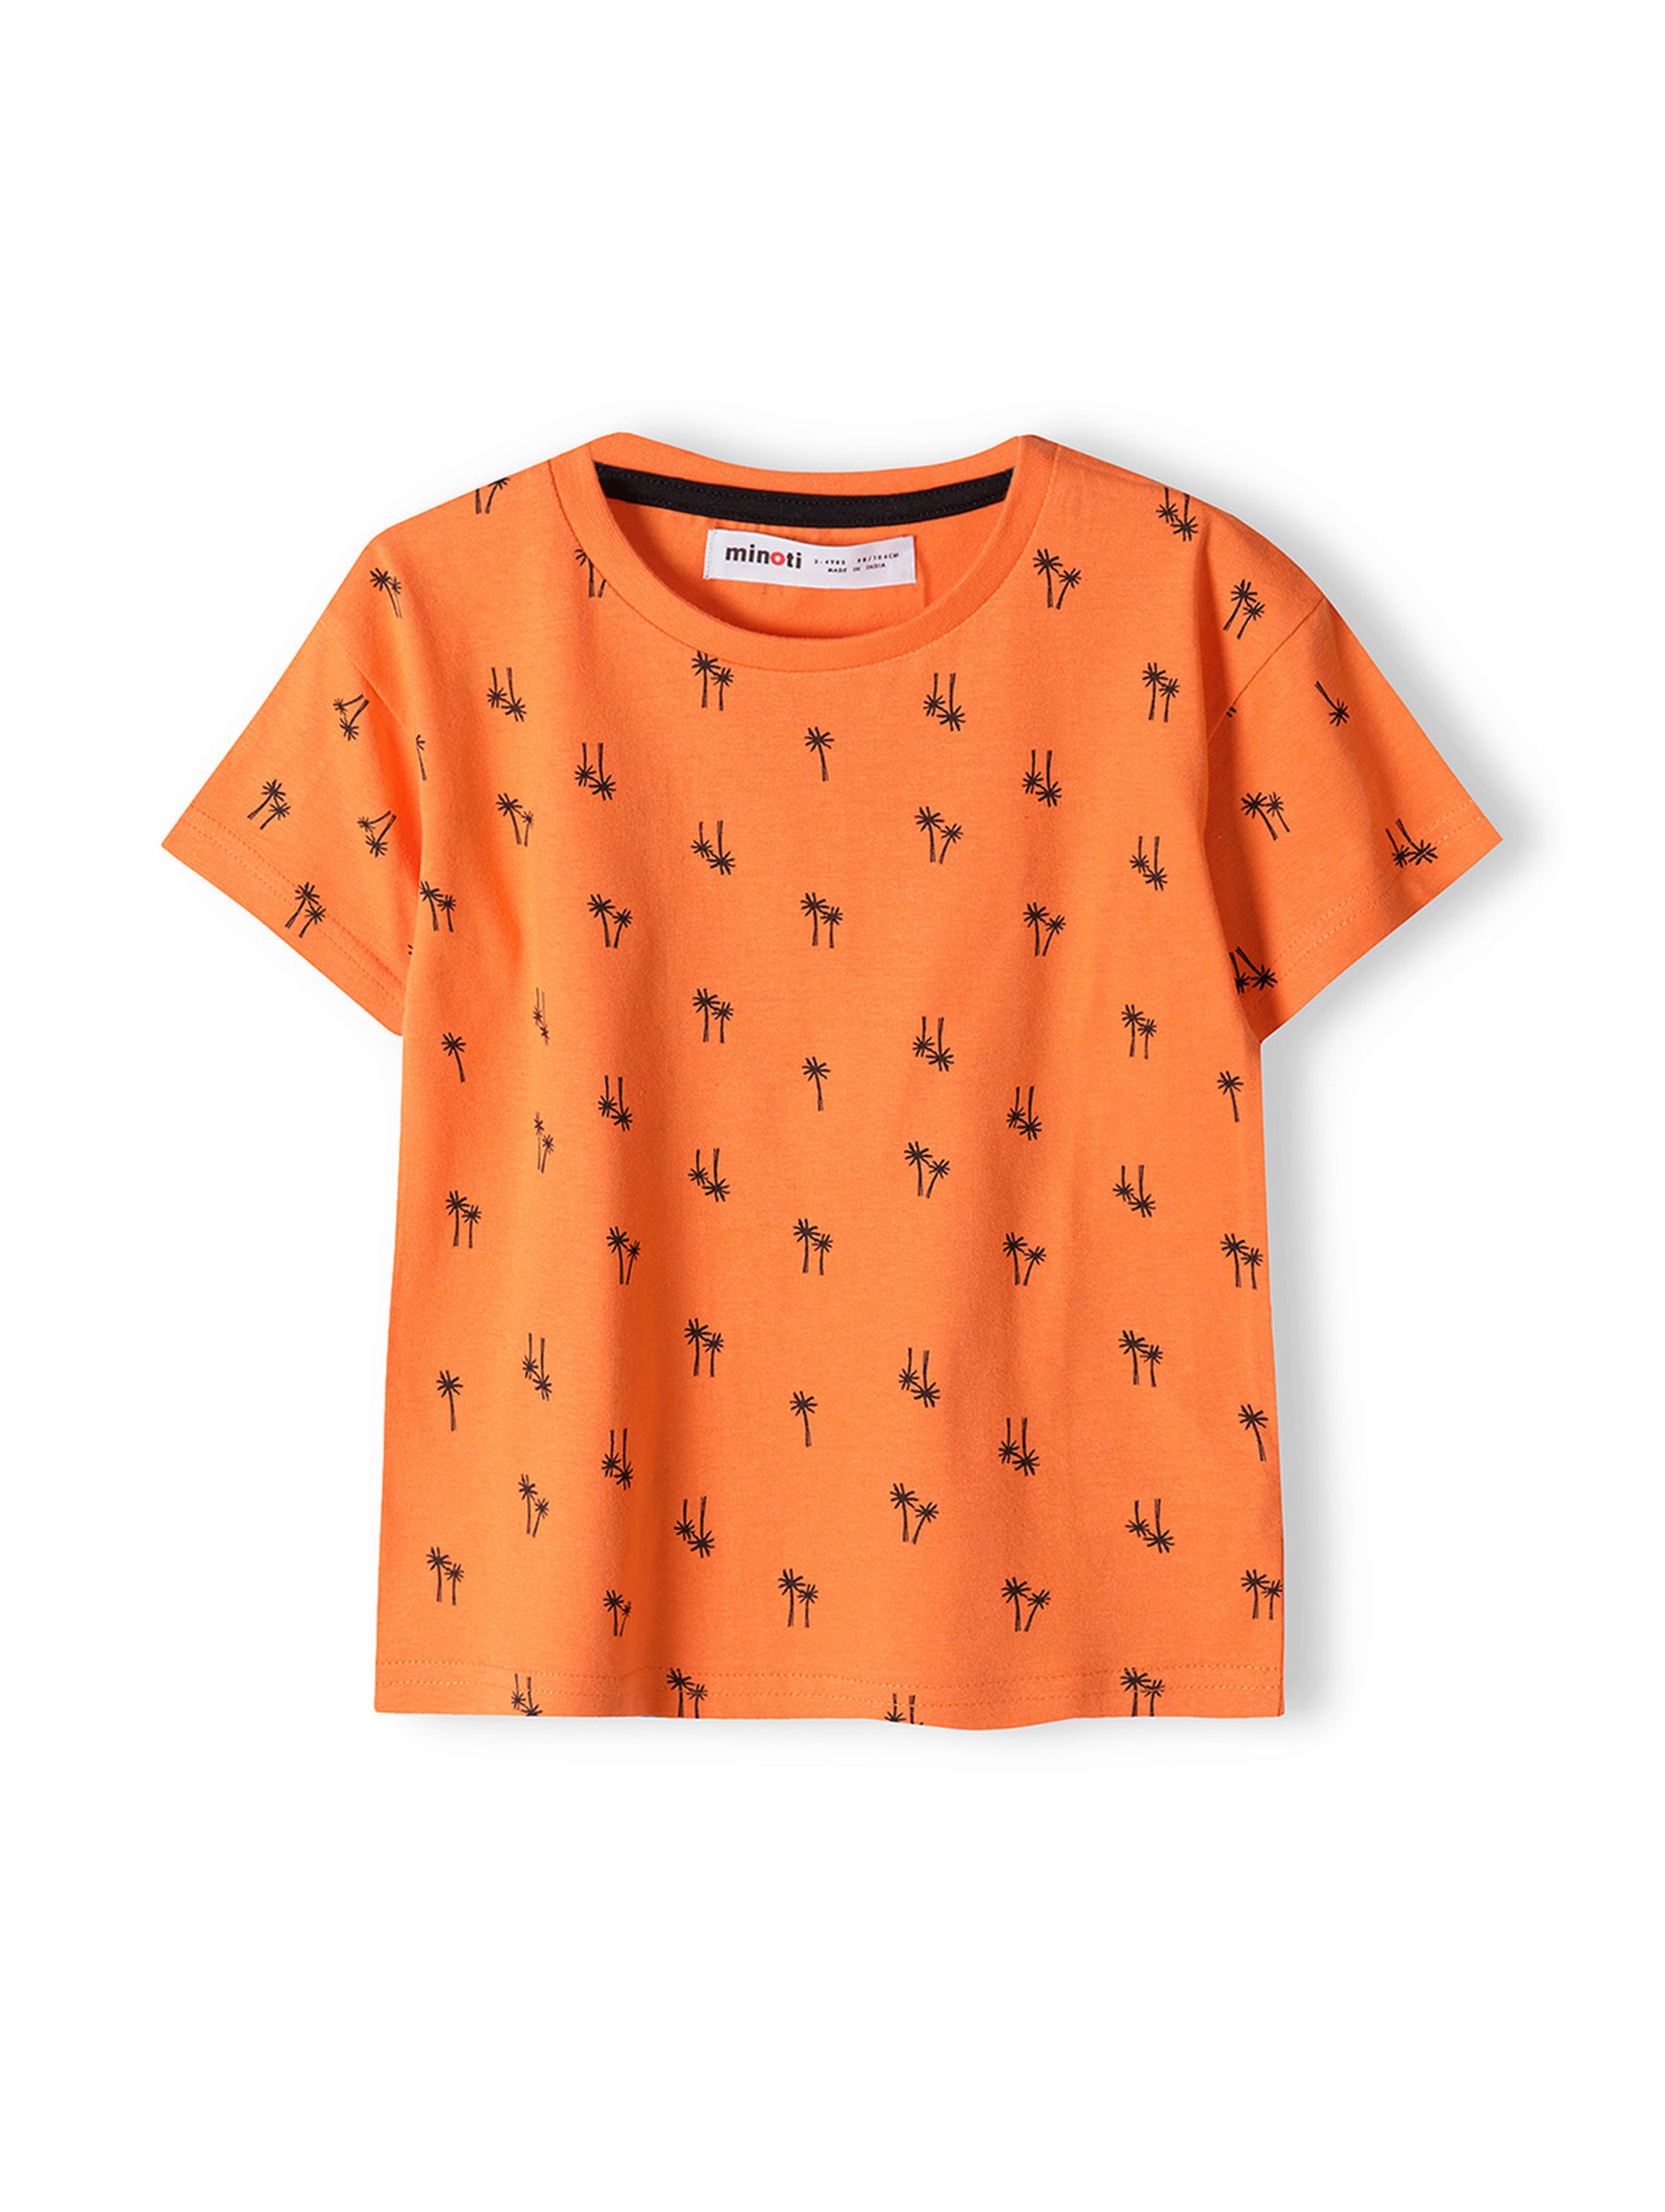 Pomarańczowa koszulka bawełniana dla niemowlaka z nadrukiem